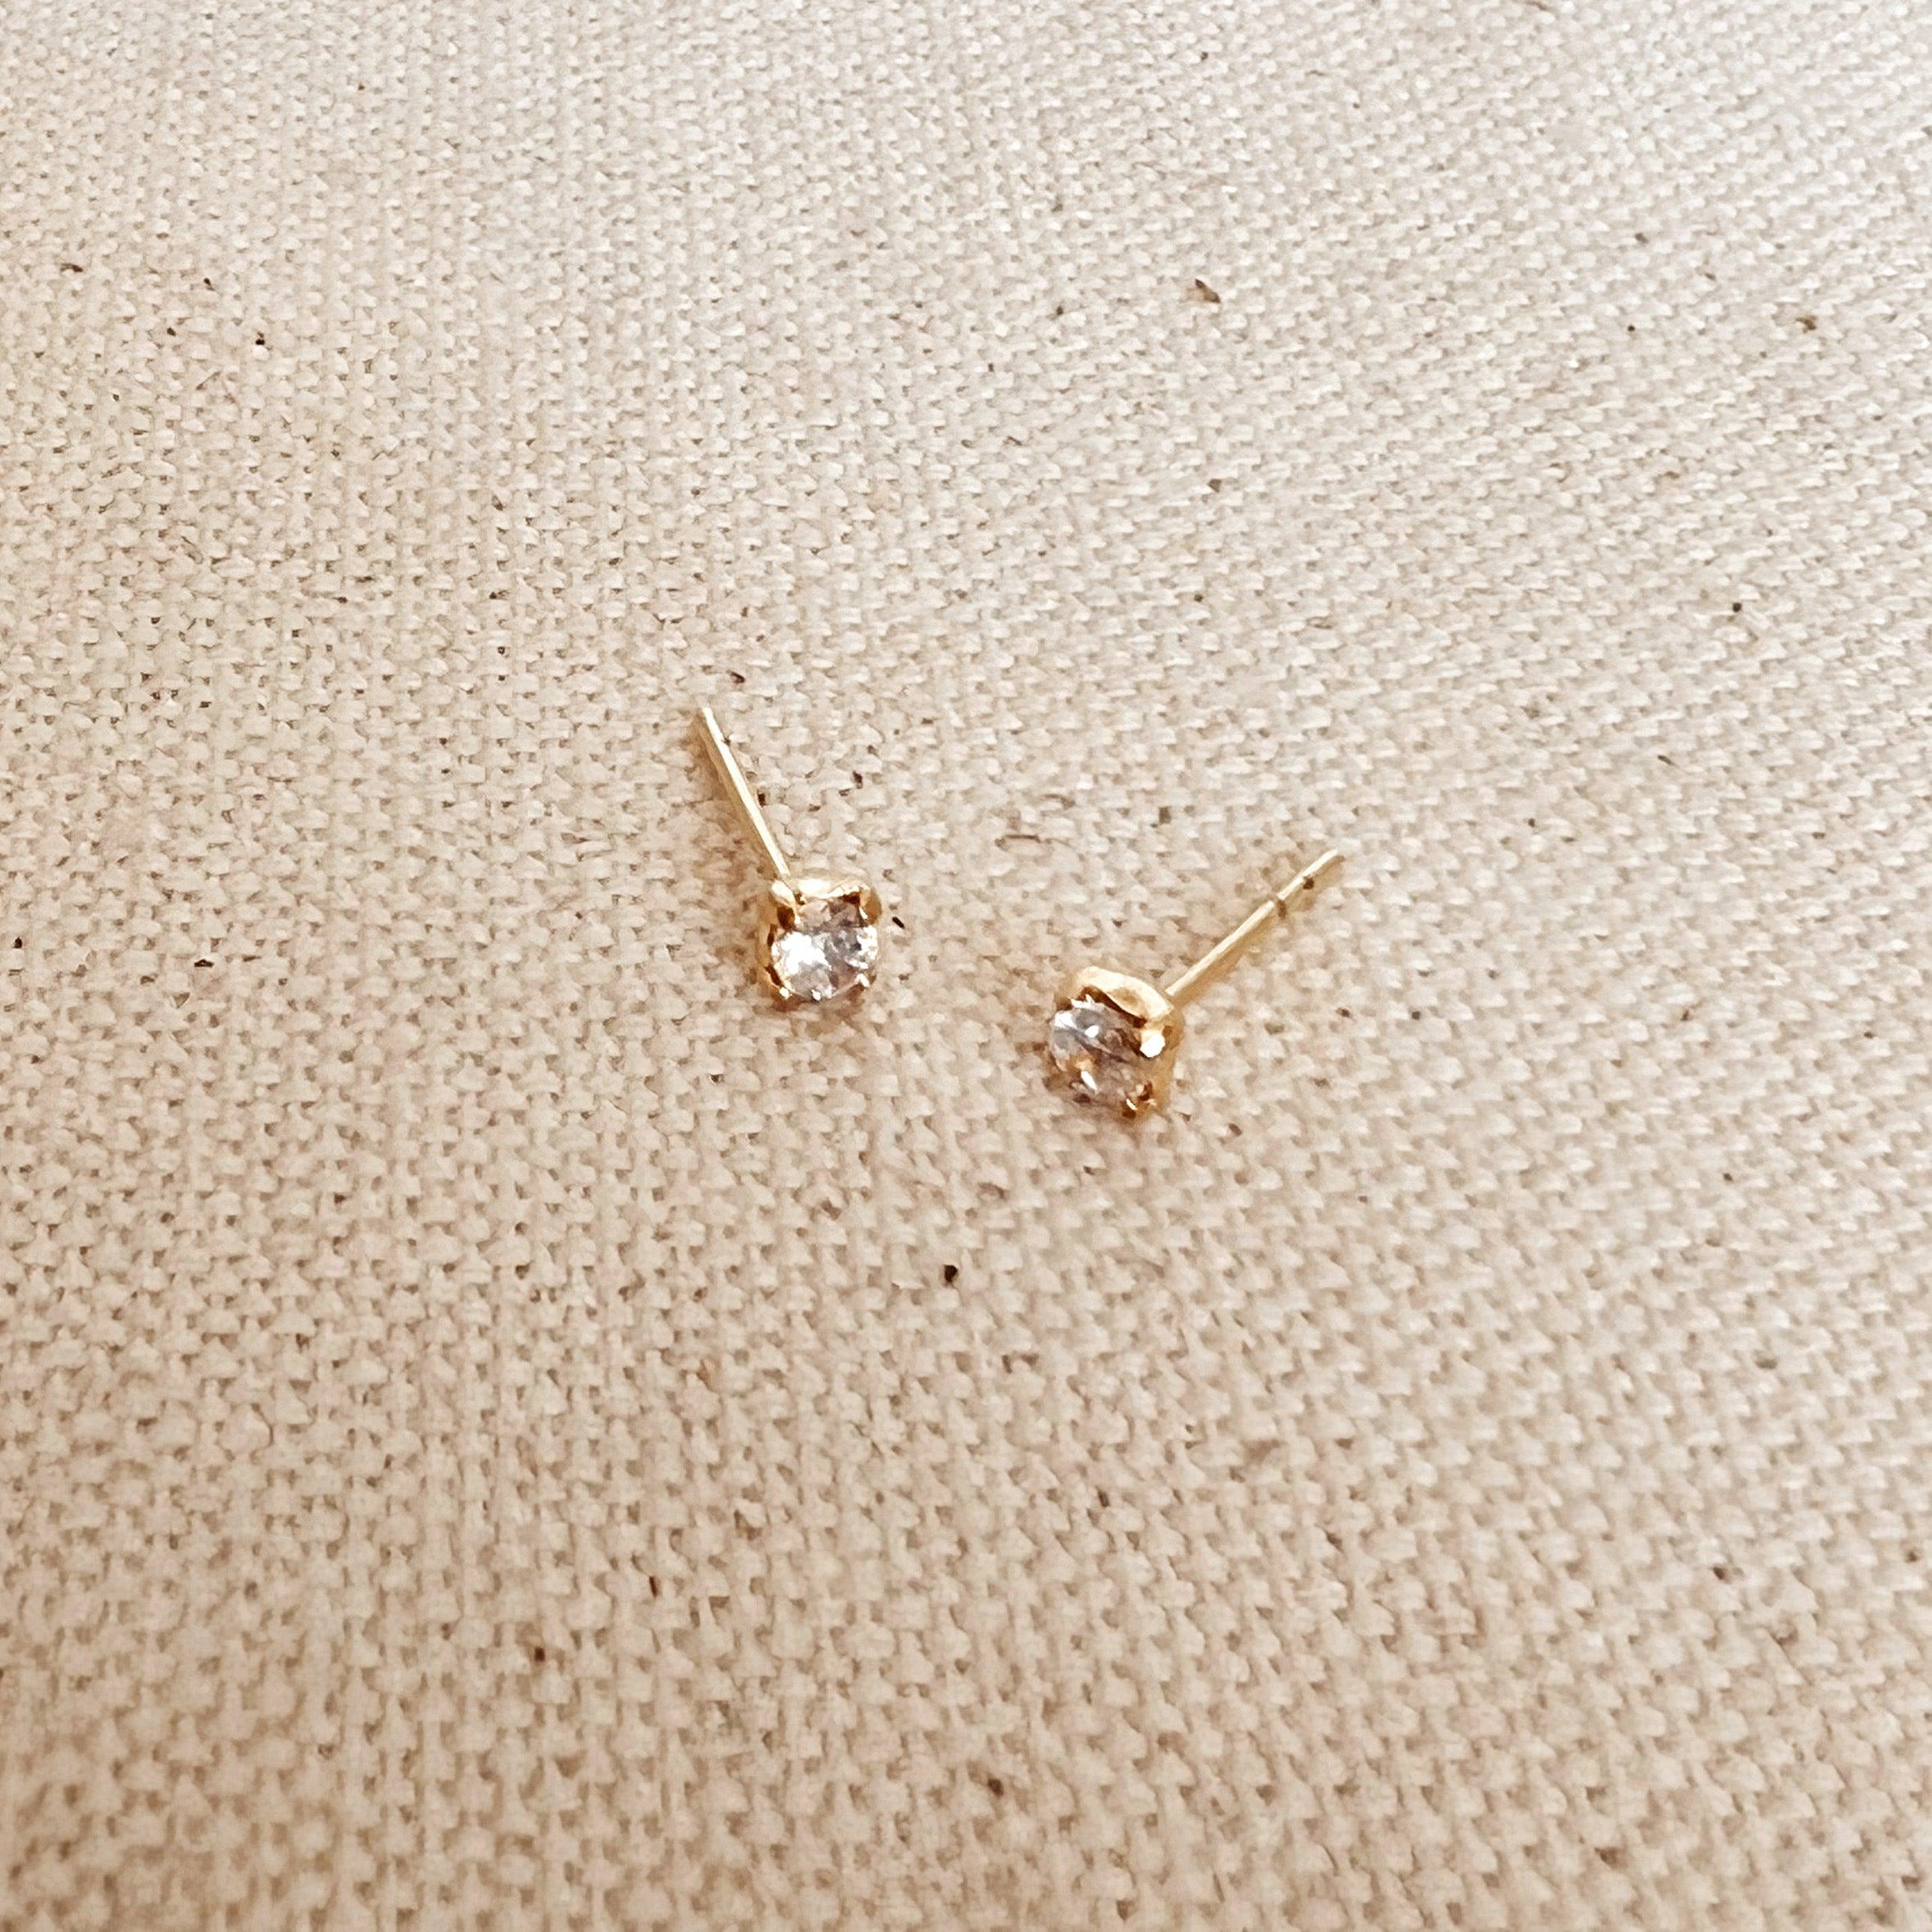  Gold Filled Zircon Diamond Stud Earrings - Small CZ